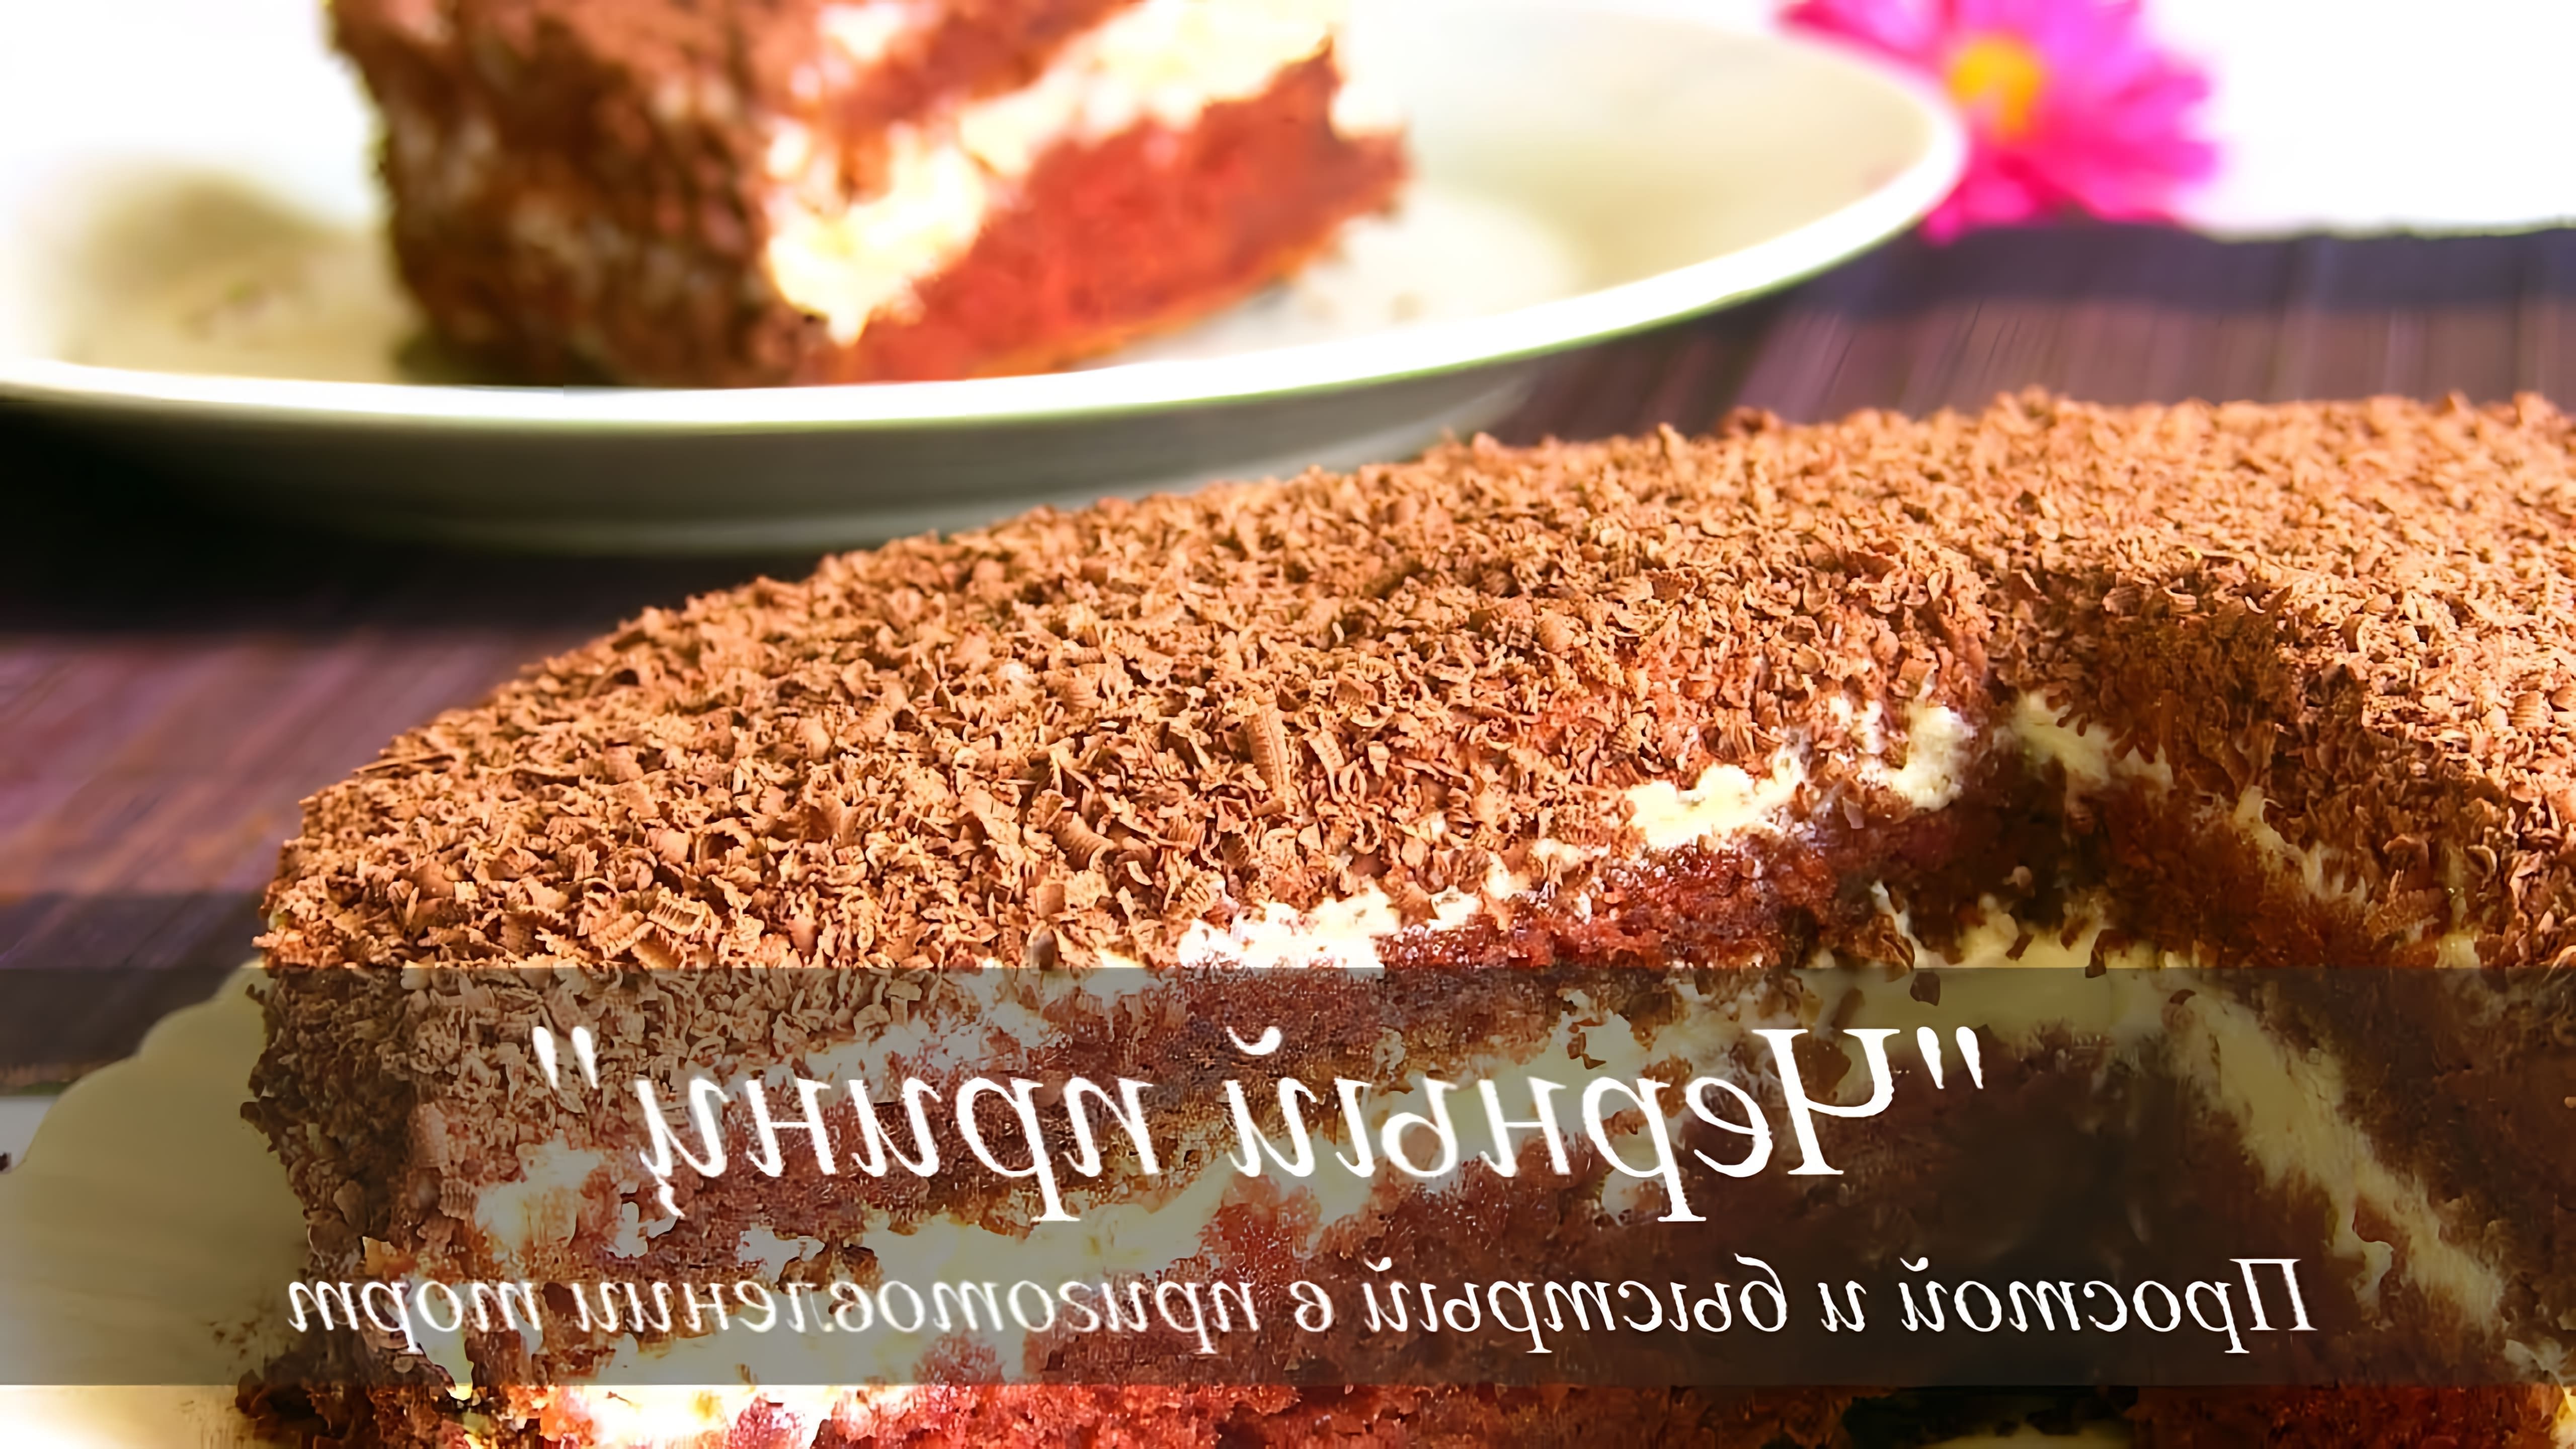 В этом видео демонстрируется рецепт приготовления торта на кефире под названием "Черный принц"